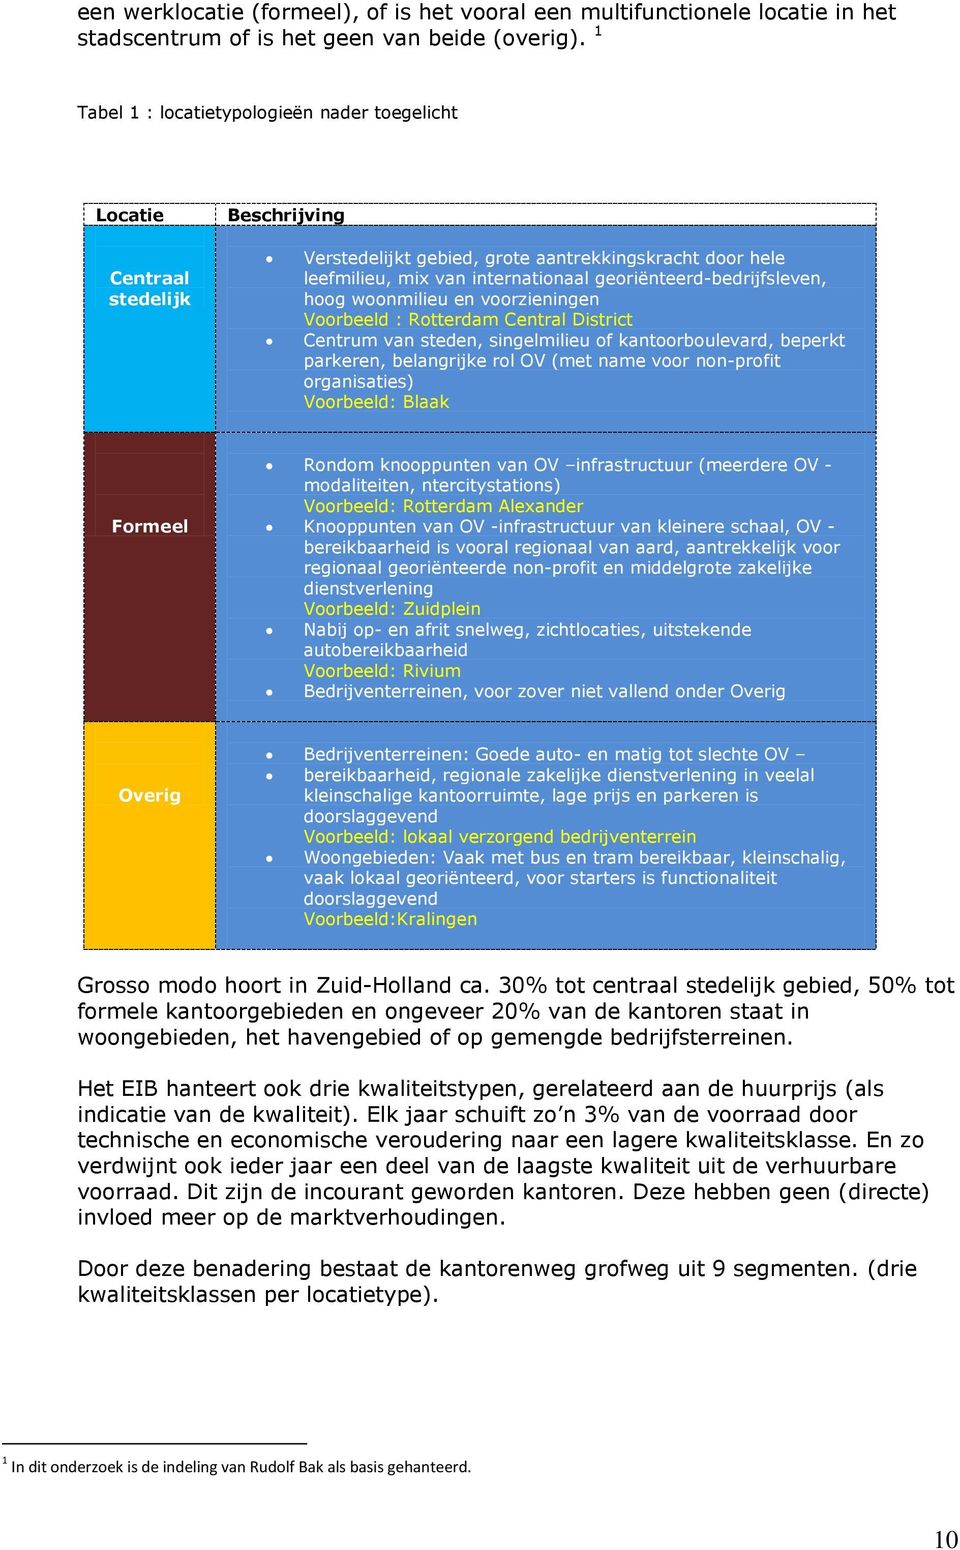 georiënteerd-bedrijfsleven, hoog woonmilieu en voorzieningen Voorbeeld : Rotterdam Central District Centrum van steden, singelmilieu of kantoorboulevard, beperkt parkeren, belangrijke rol OV (met